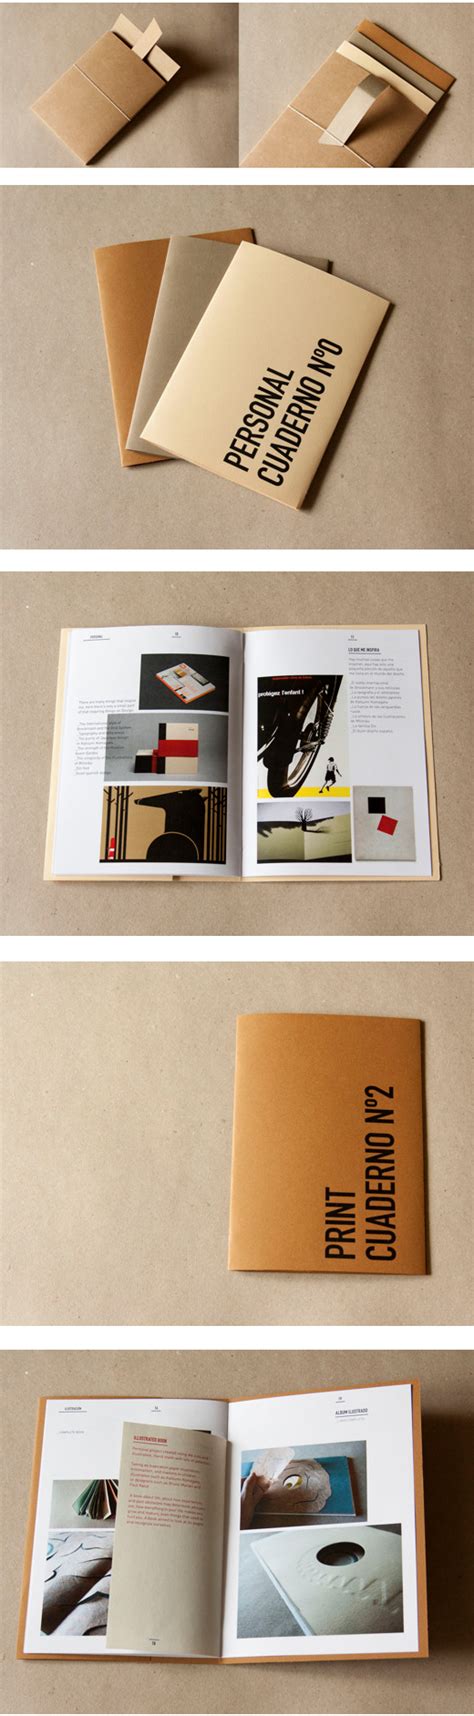 Best Graphic Designers Portfolio 24 Outstanding Design Portfolio